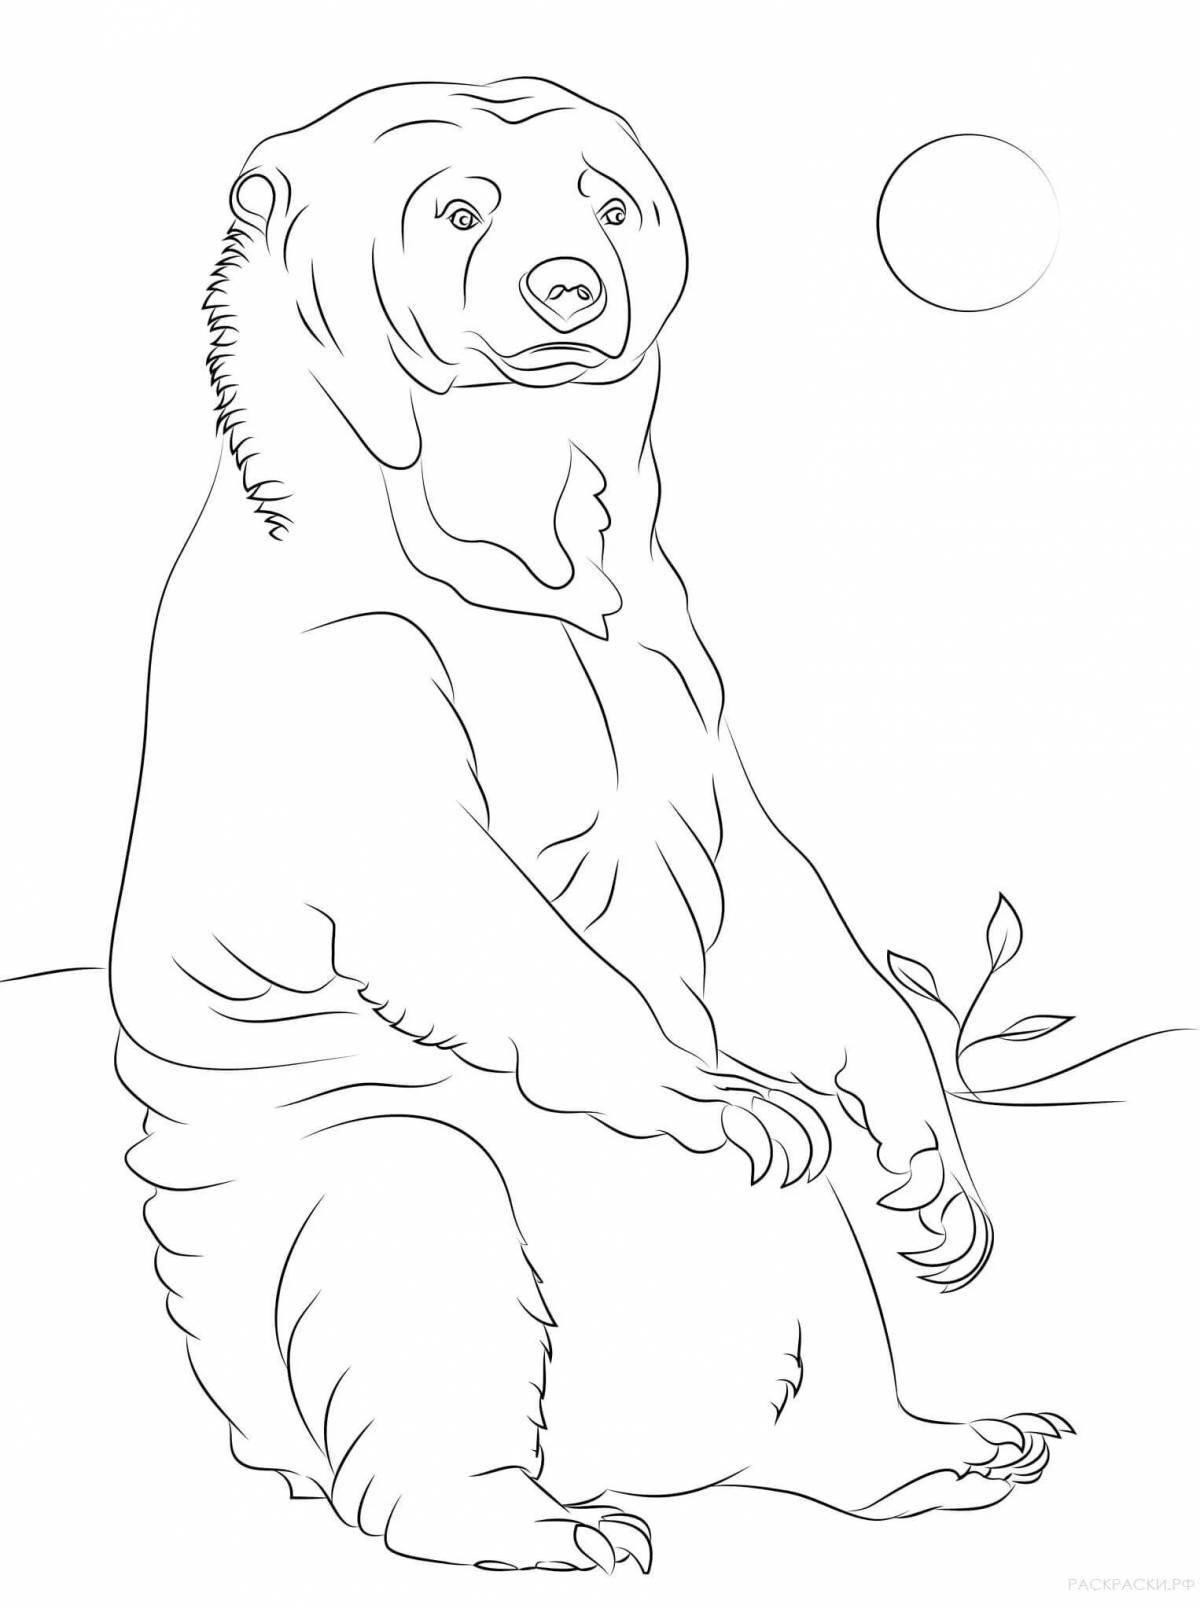 Coloring page graceful himalayan bear